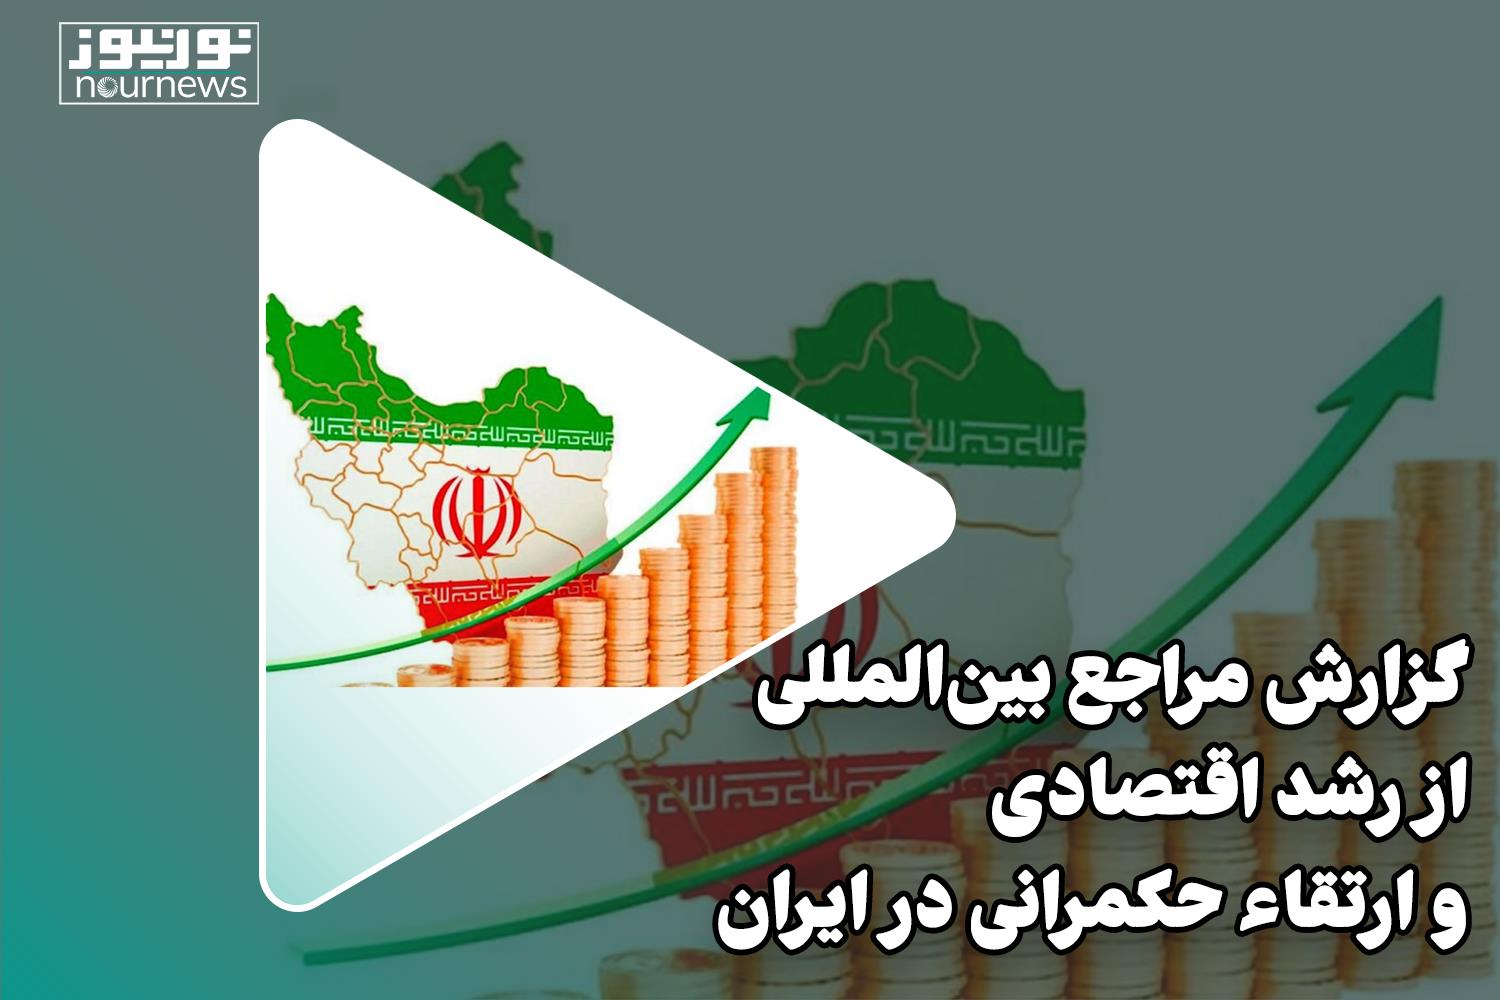 گزارش مراجع بین المللی از رشد اقتصادی و ارتقاء حکمرانی در ایران